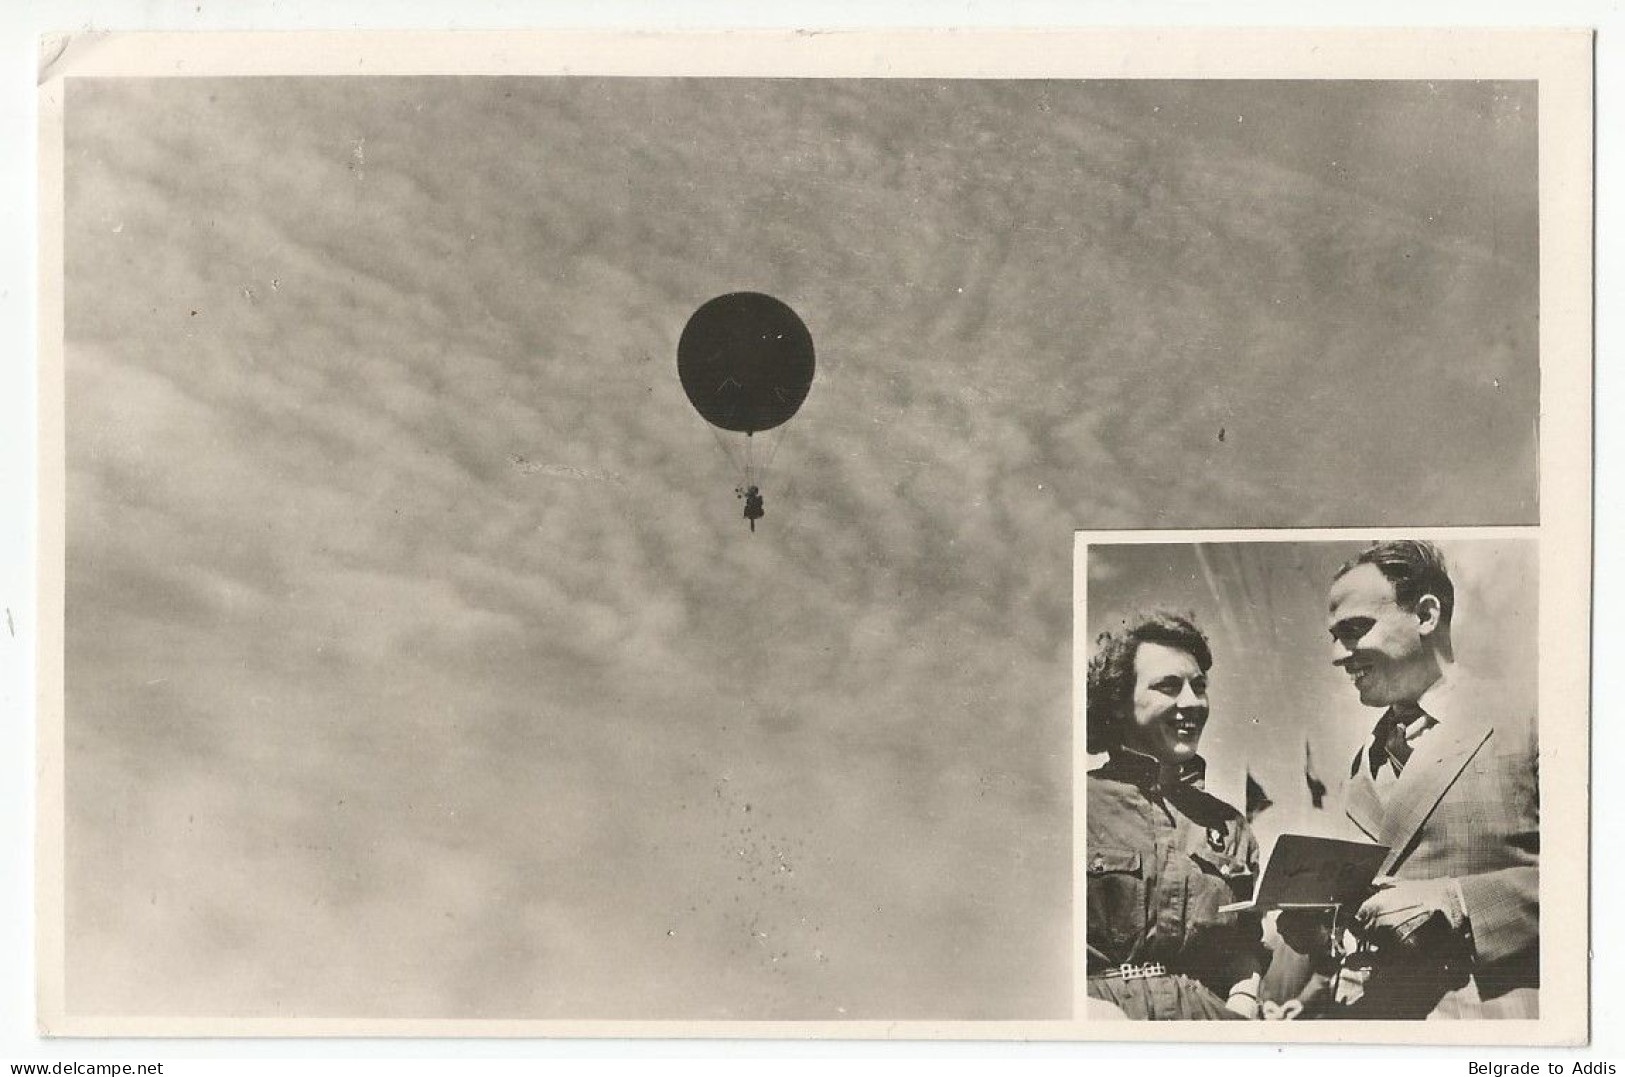 Algérie Carte Postale Premier Vol Ballon Henri Dunant Signé Par Pilote Boesman 1950 Vers La Suède - Aéreo